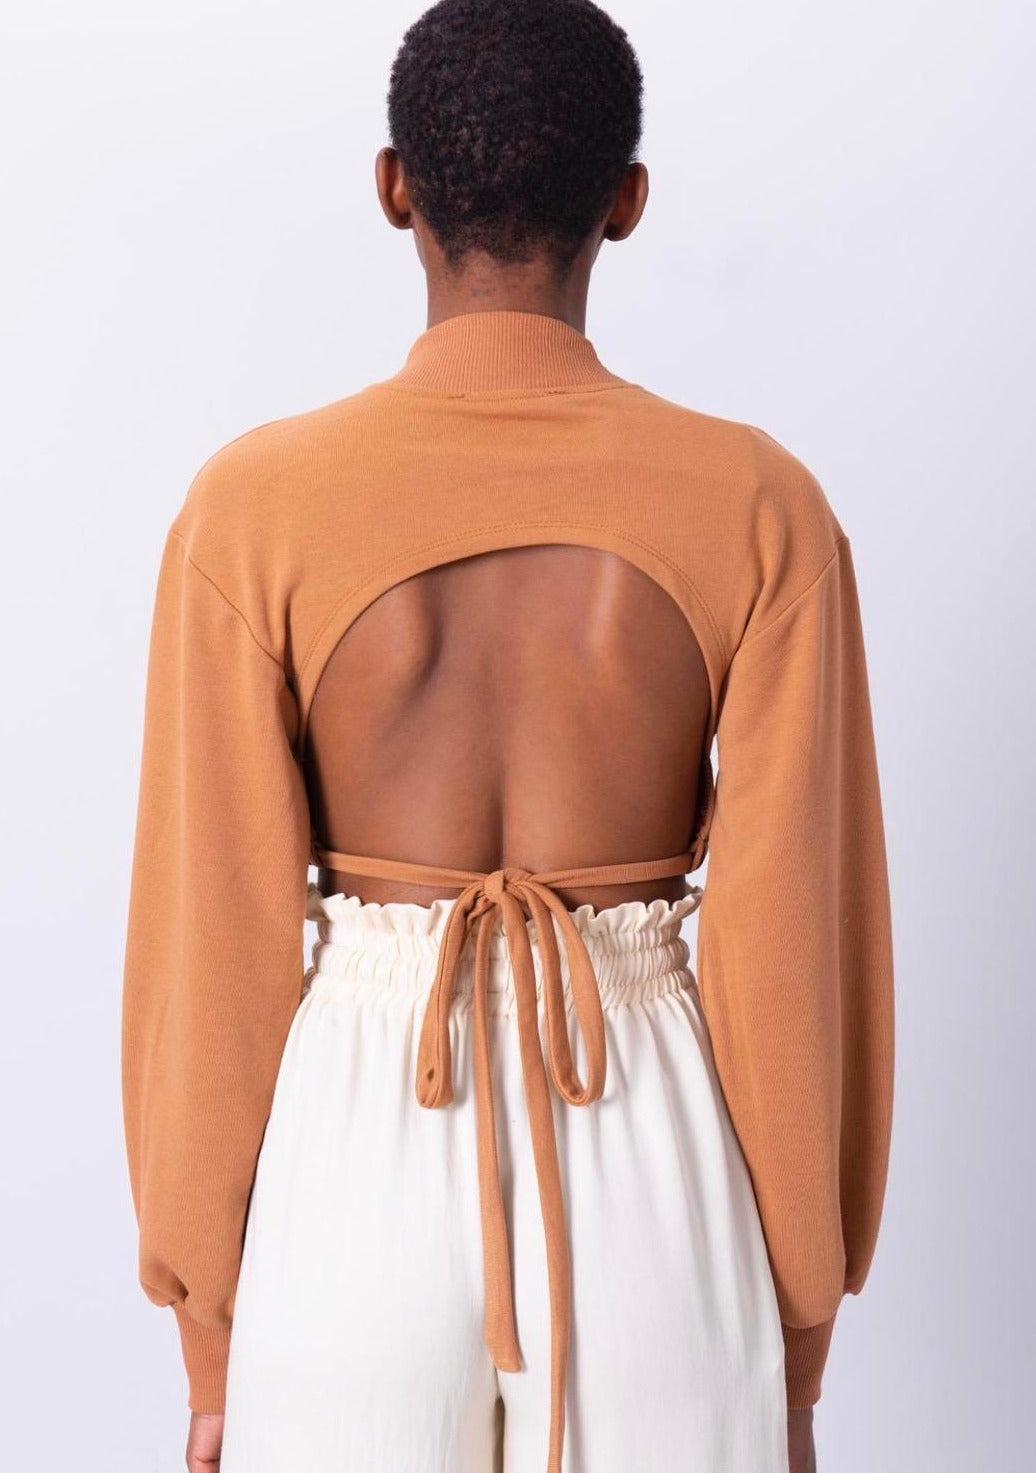 Дамска блуза BELSSA  https://bvseductive.com/products/мска-блуза-belssa  50 % памук 50 % полиестер модерна къса блуза в кафяв цвят модел с ефектен гол гръб и връзки позволява лесно да се комбинира супер предложение за сезон пролет/есен тренди избор за Вашата визия&nbsp;